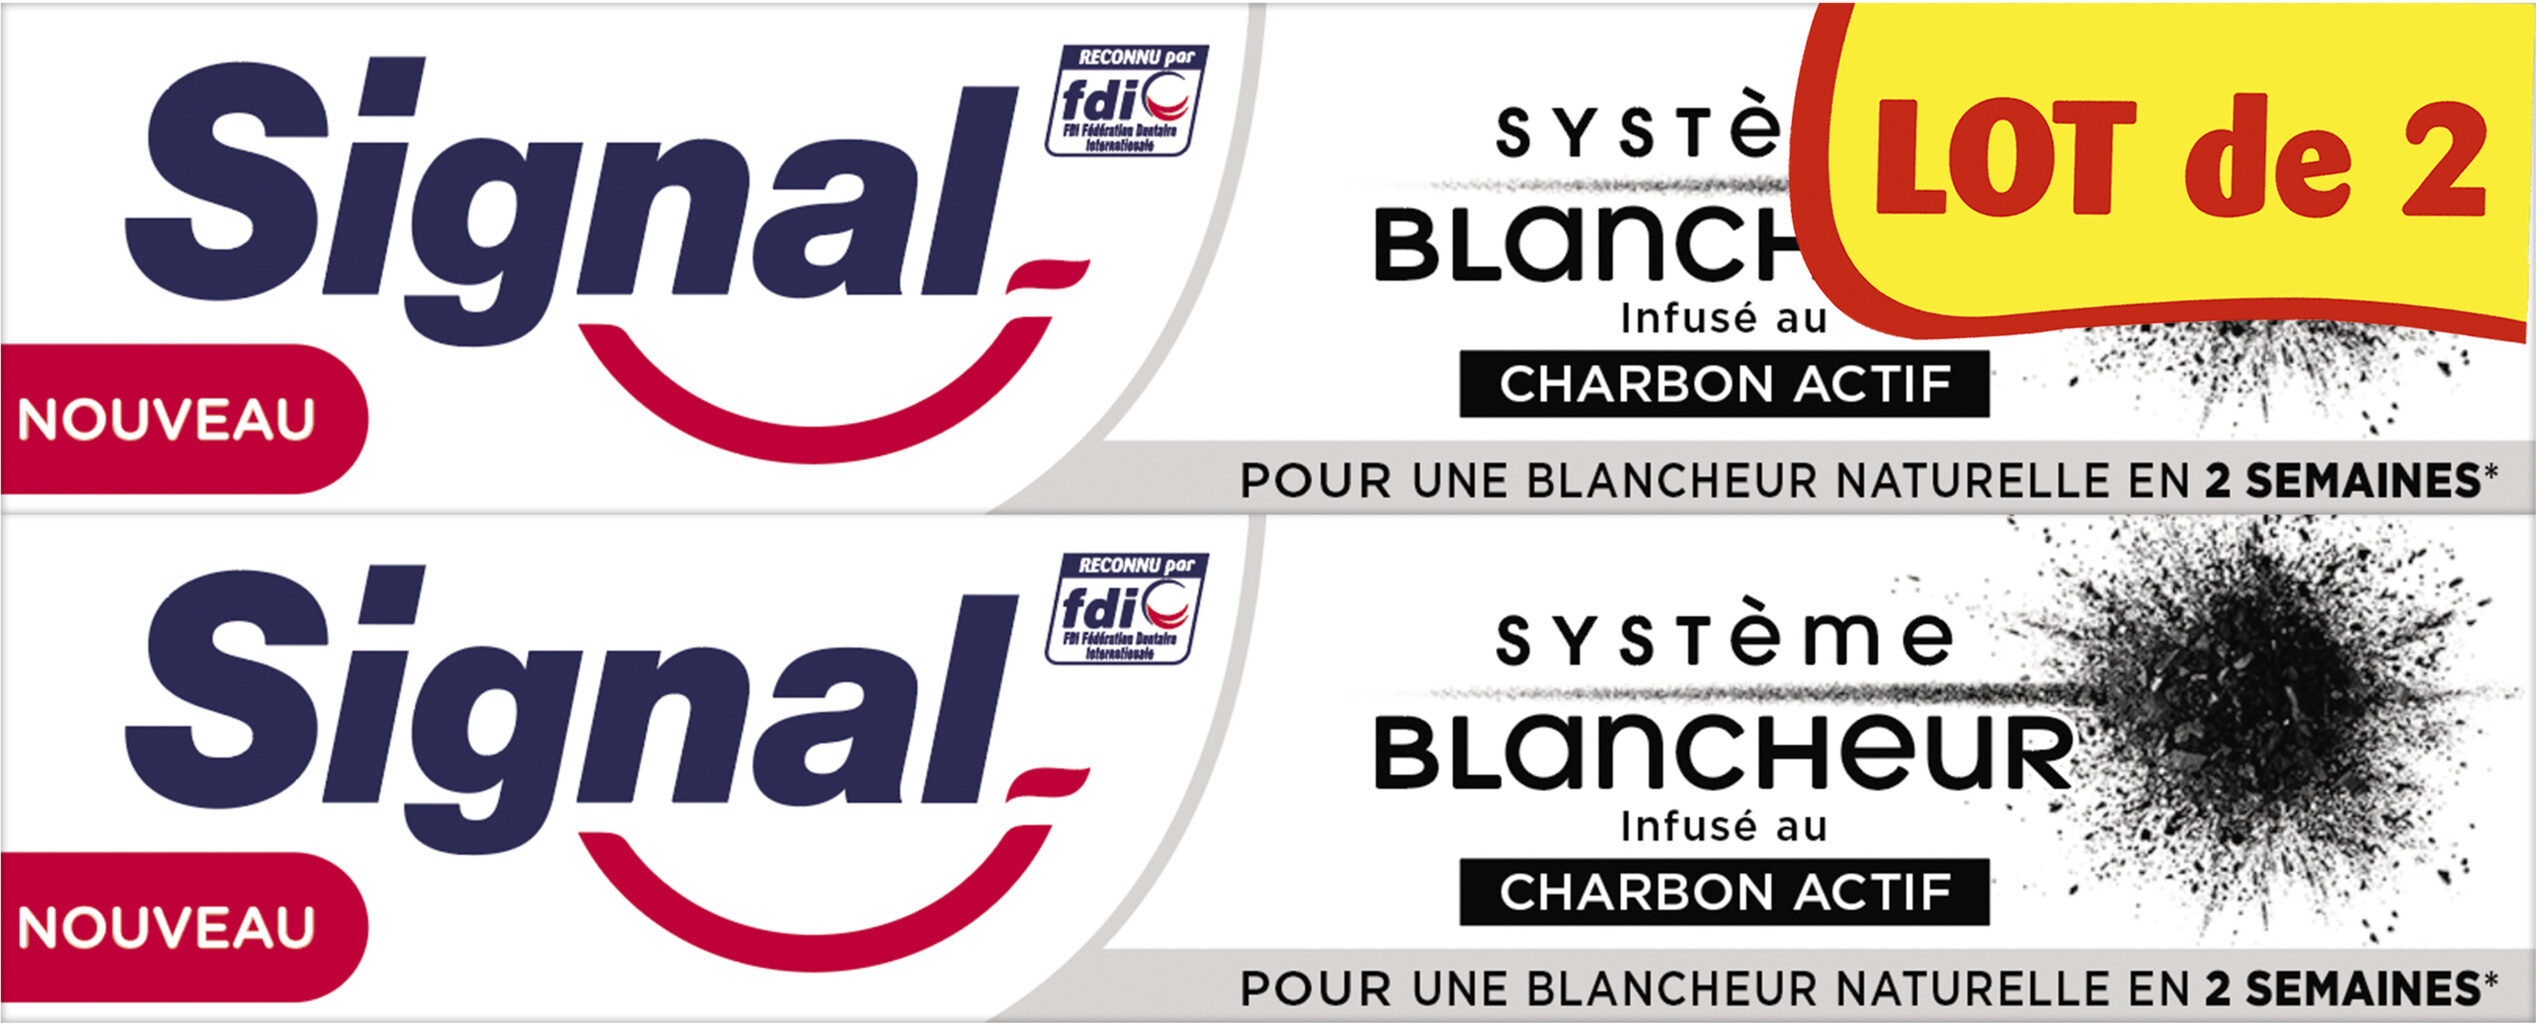 Signal Dentifrice Système Blancheur Charbon Actif 2x75ml - Produit - fr